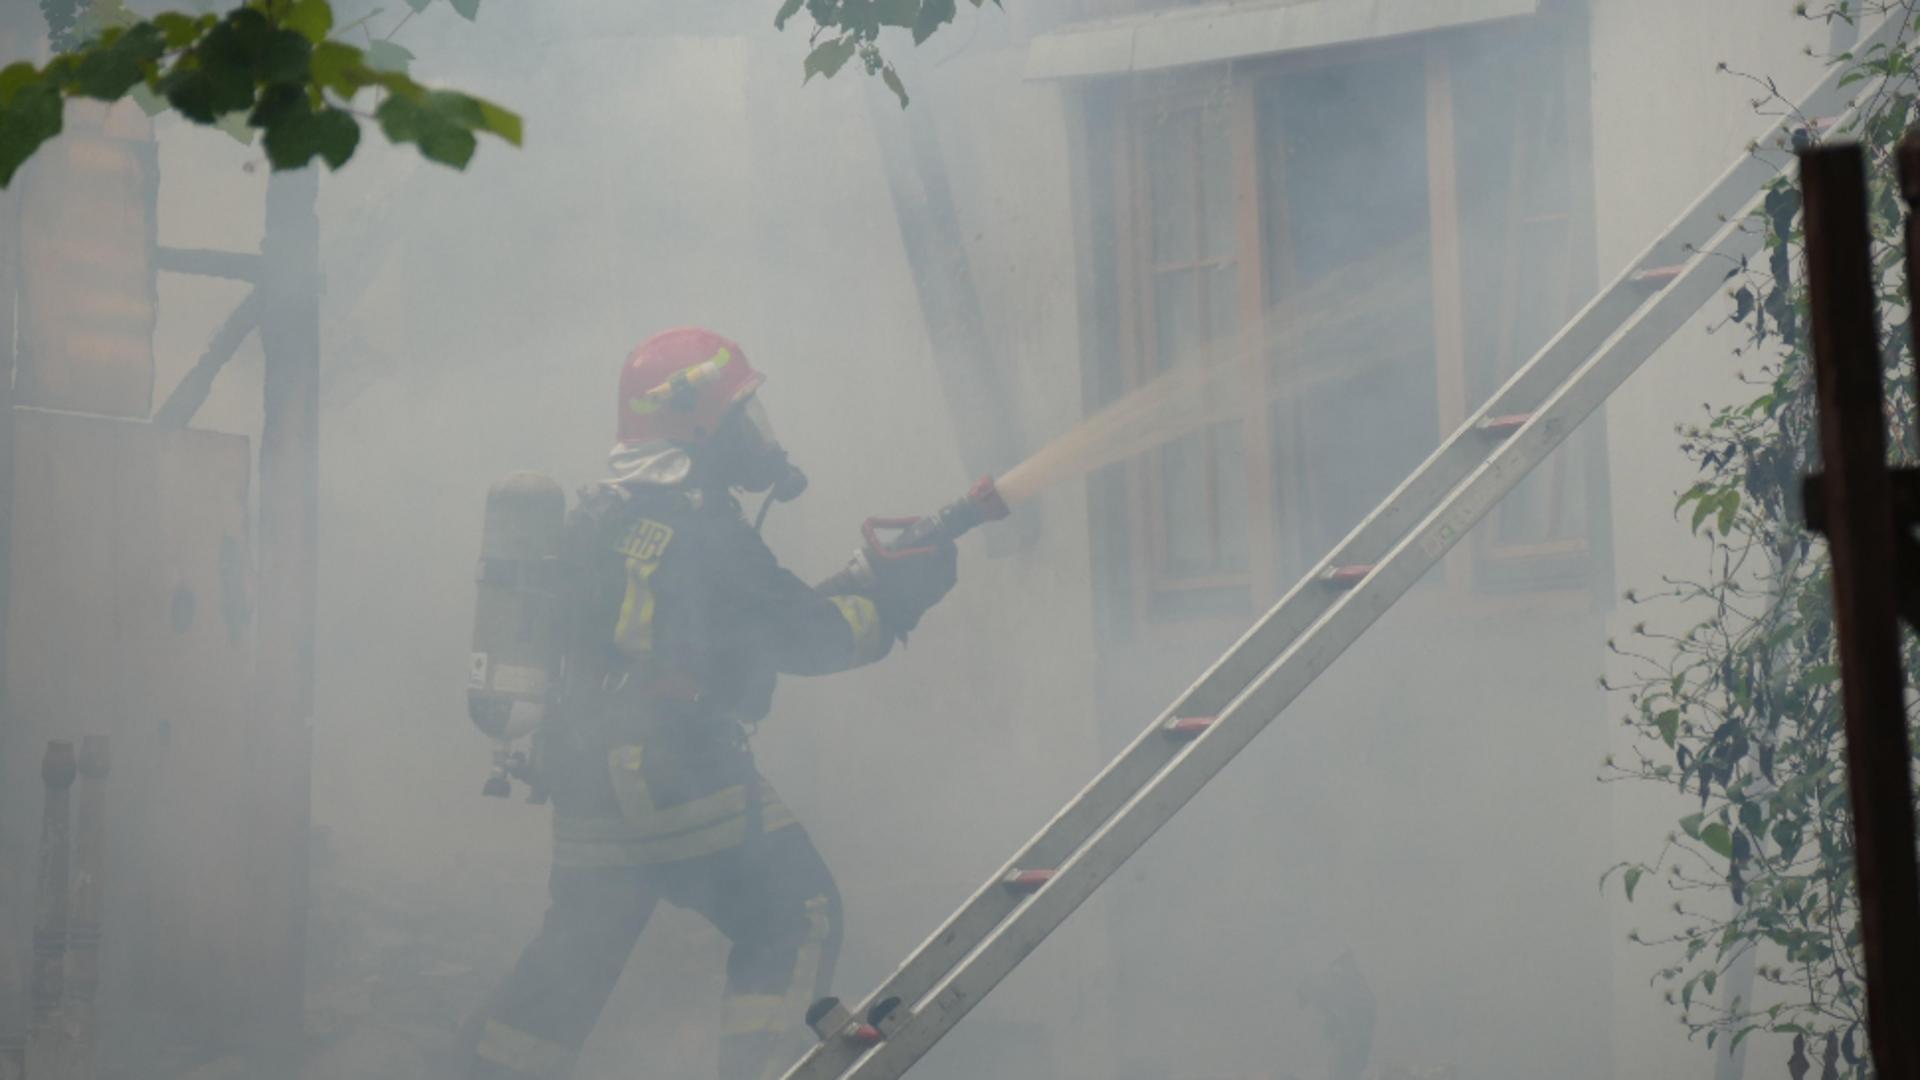 Incendiu violent într-un bloc din Botoșani. Foto: Profi Media